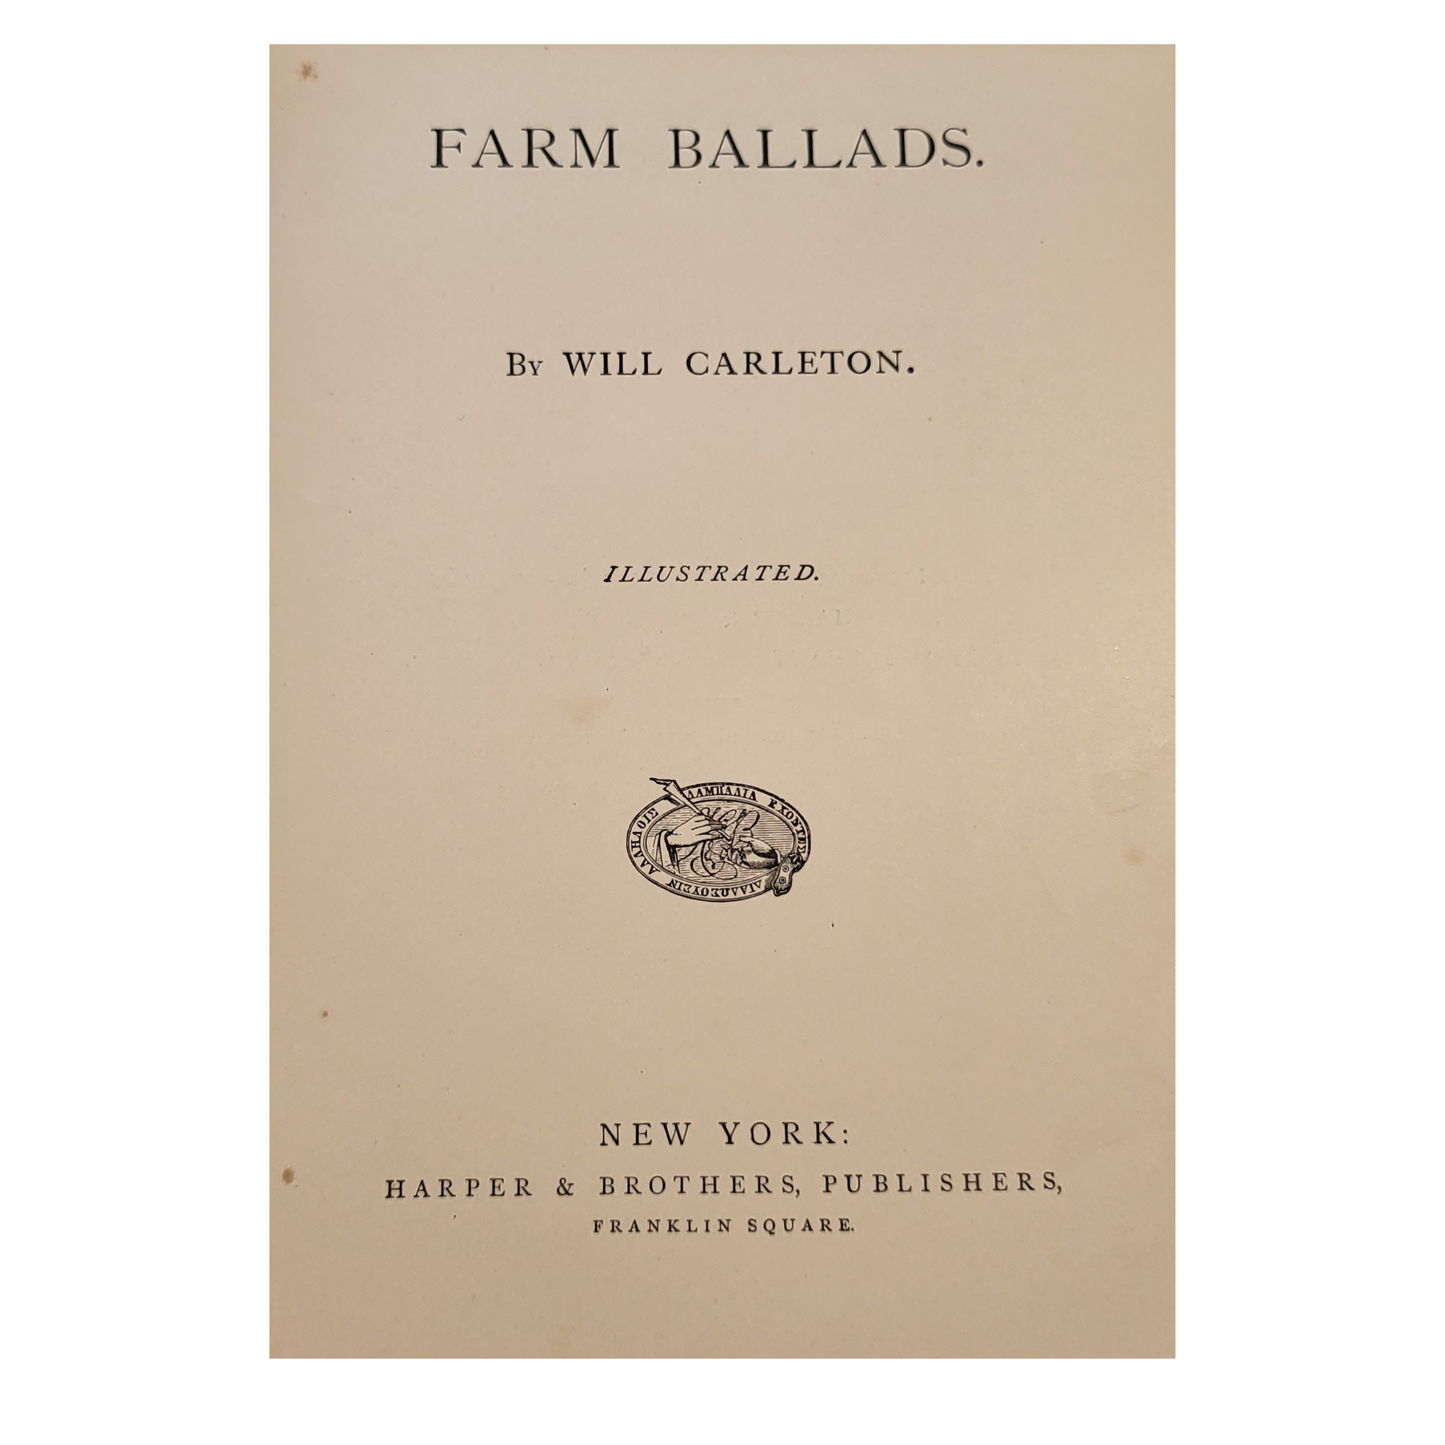 Farm Ballads by Will Carleton - 1882